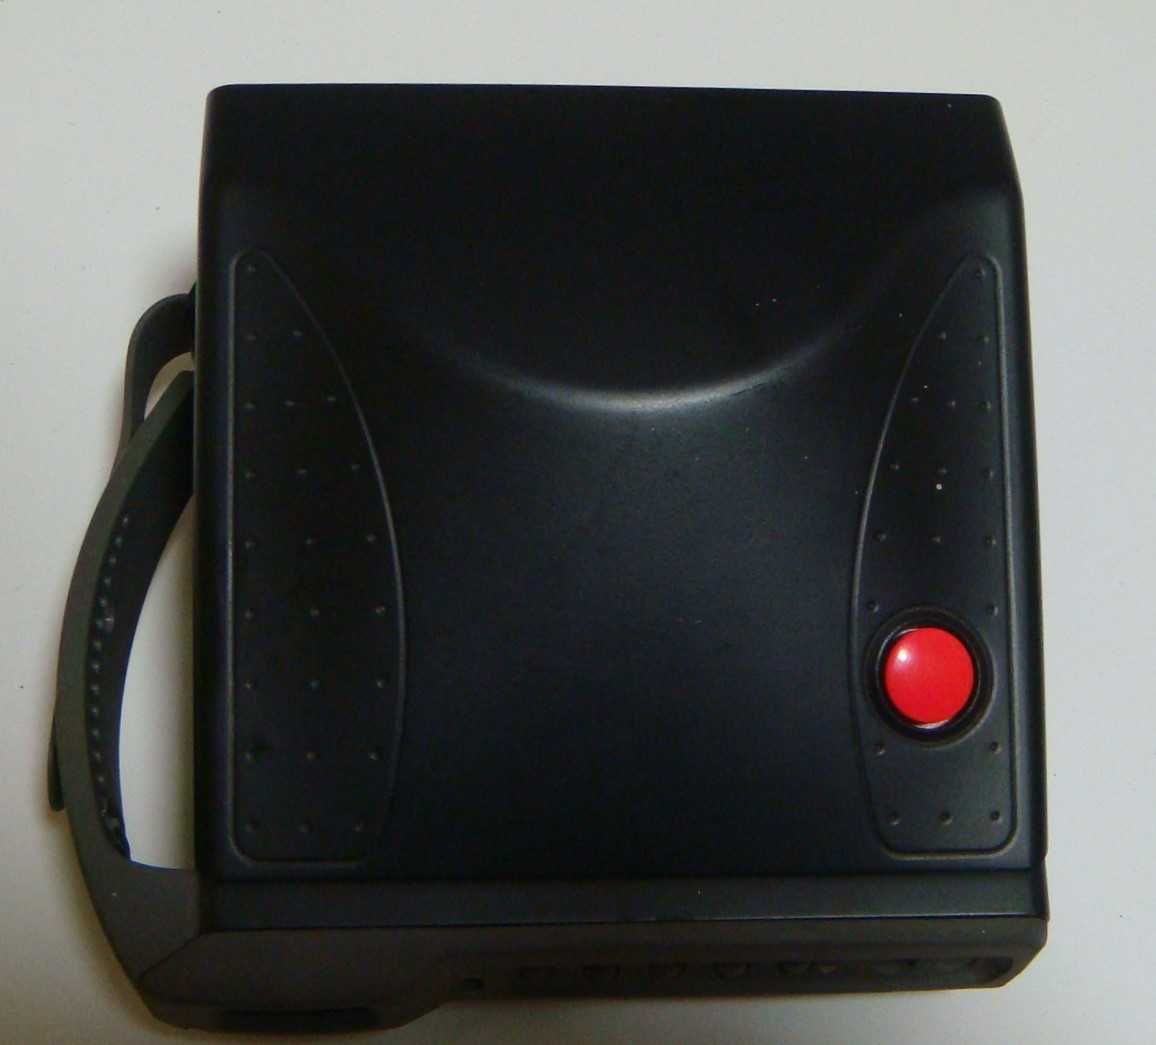 Винтажная пленочная камера моментальной печати Polaroid Spectra SE